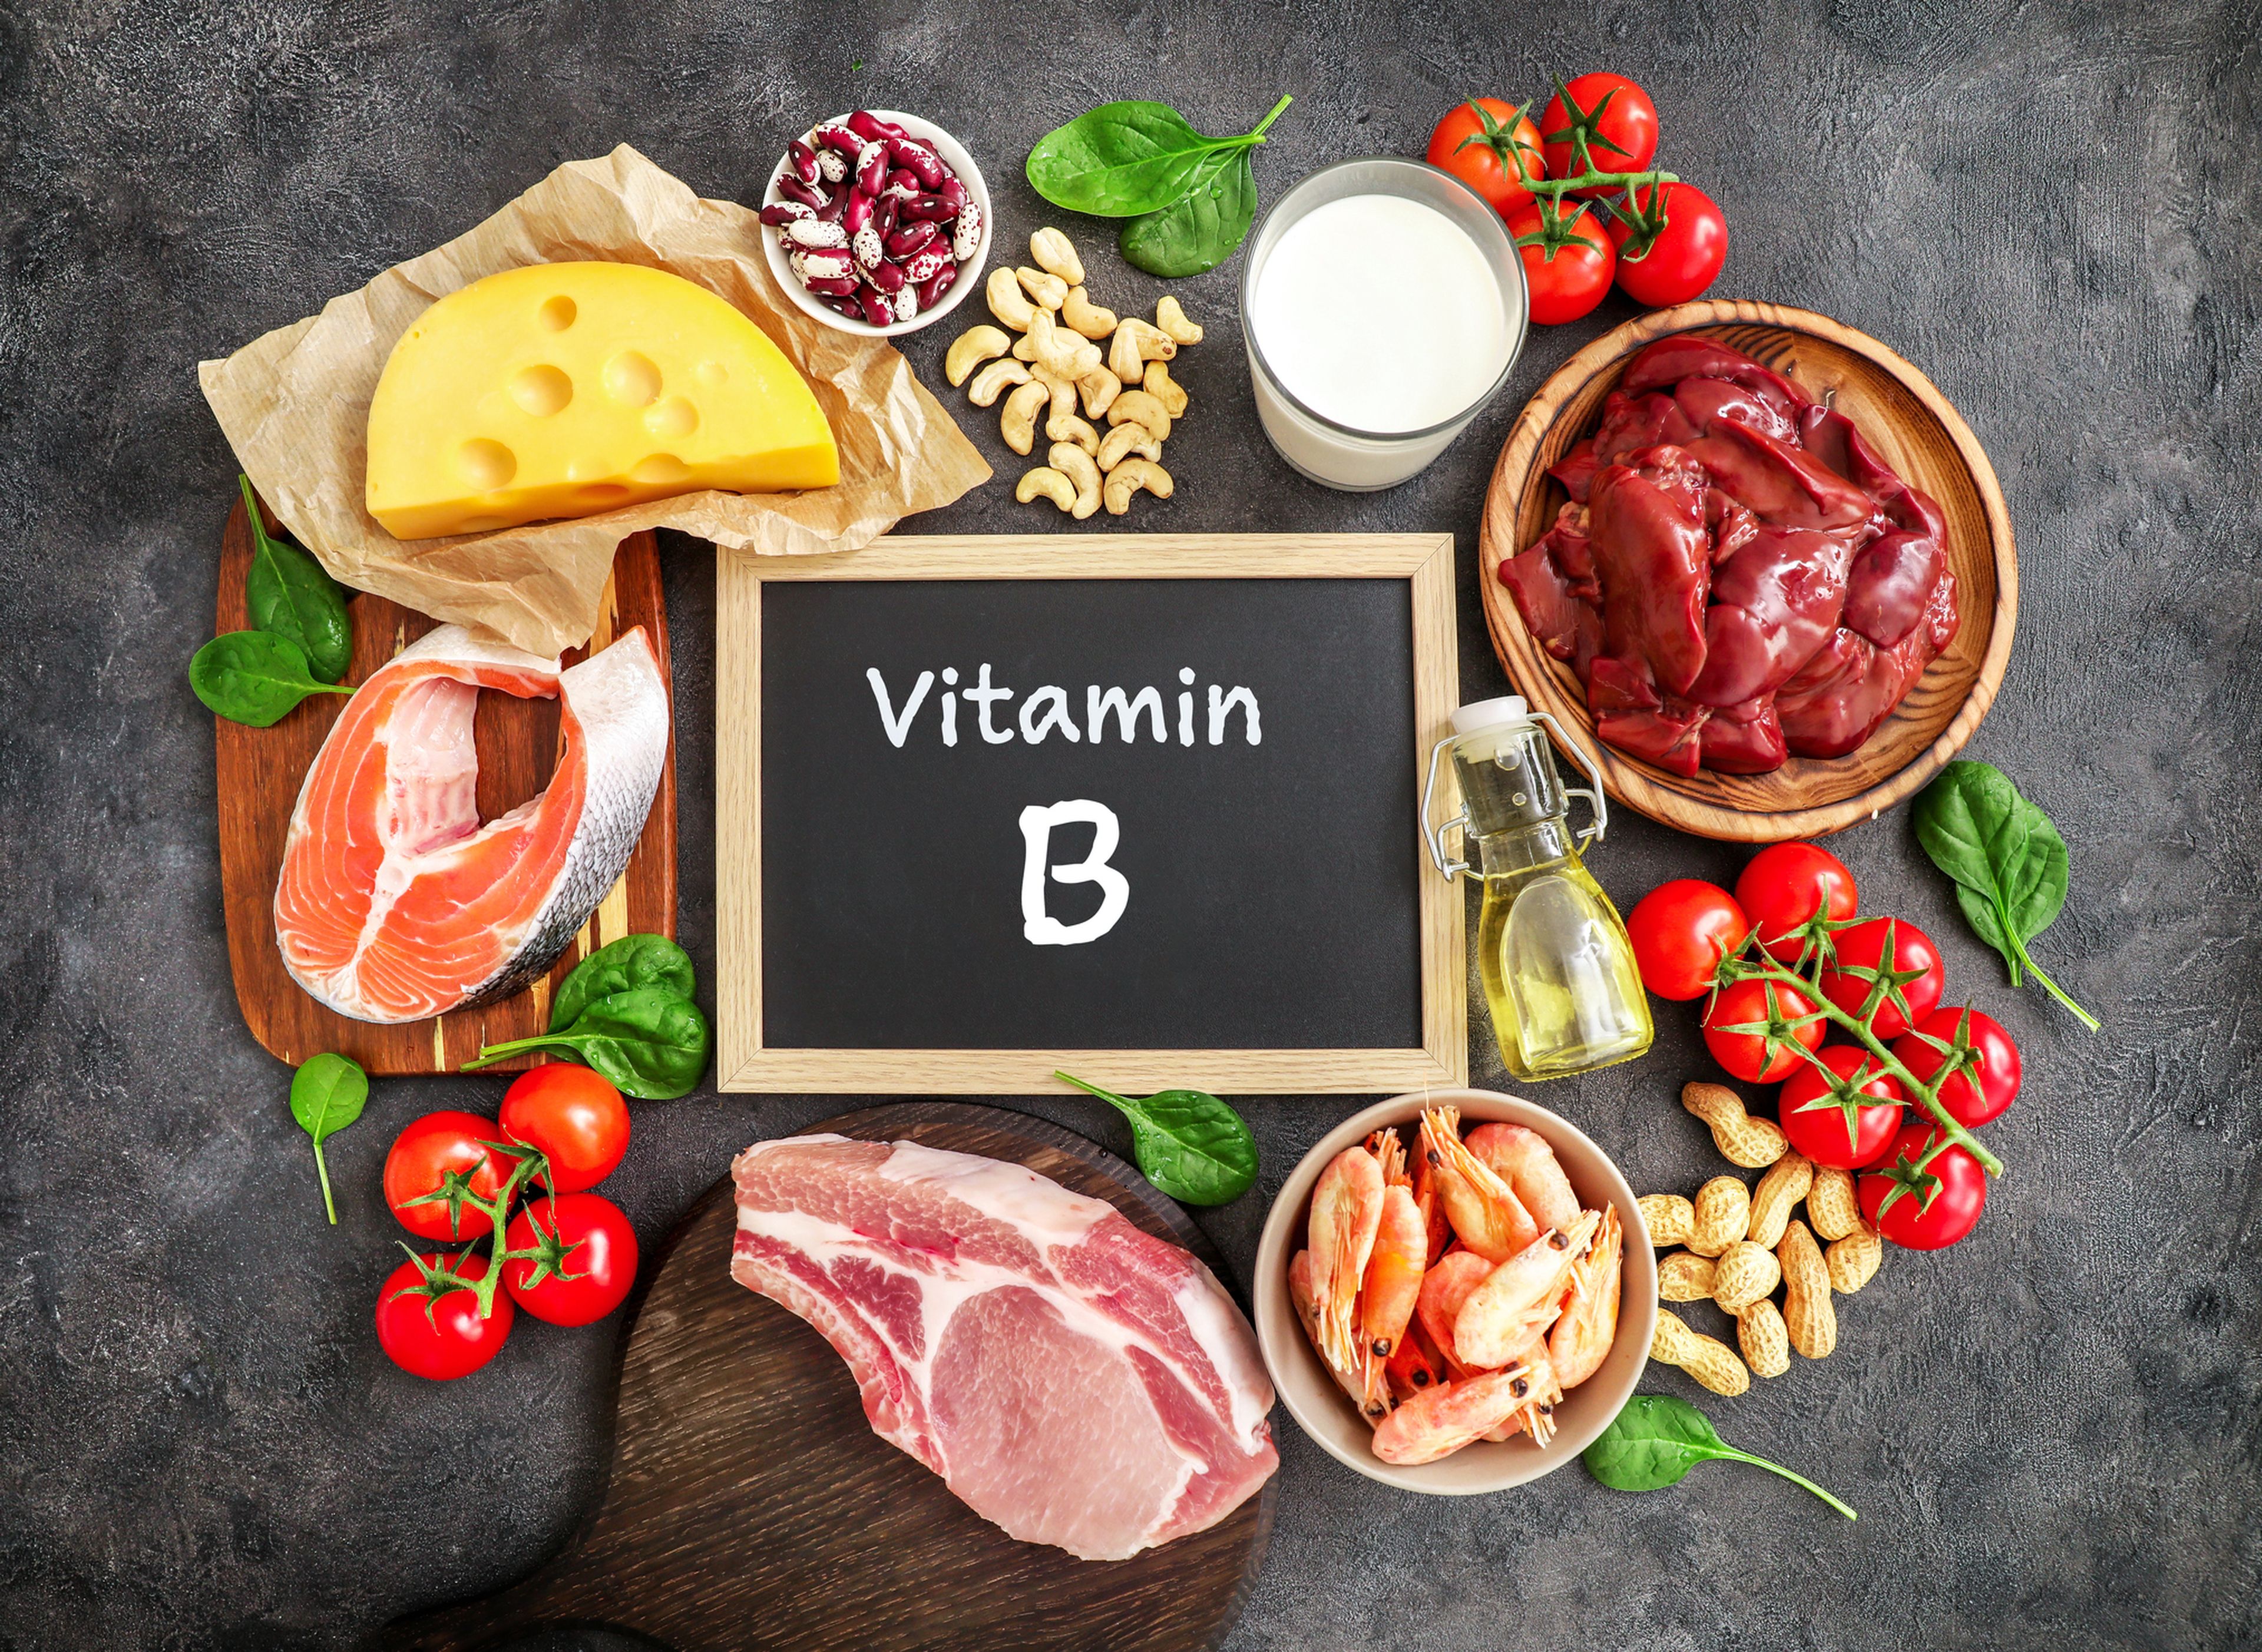 Surtido de alimentos ricos en vitaminas del complejo B.